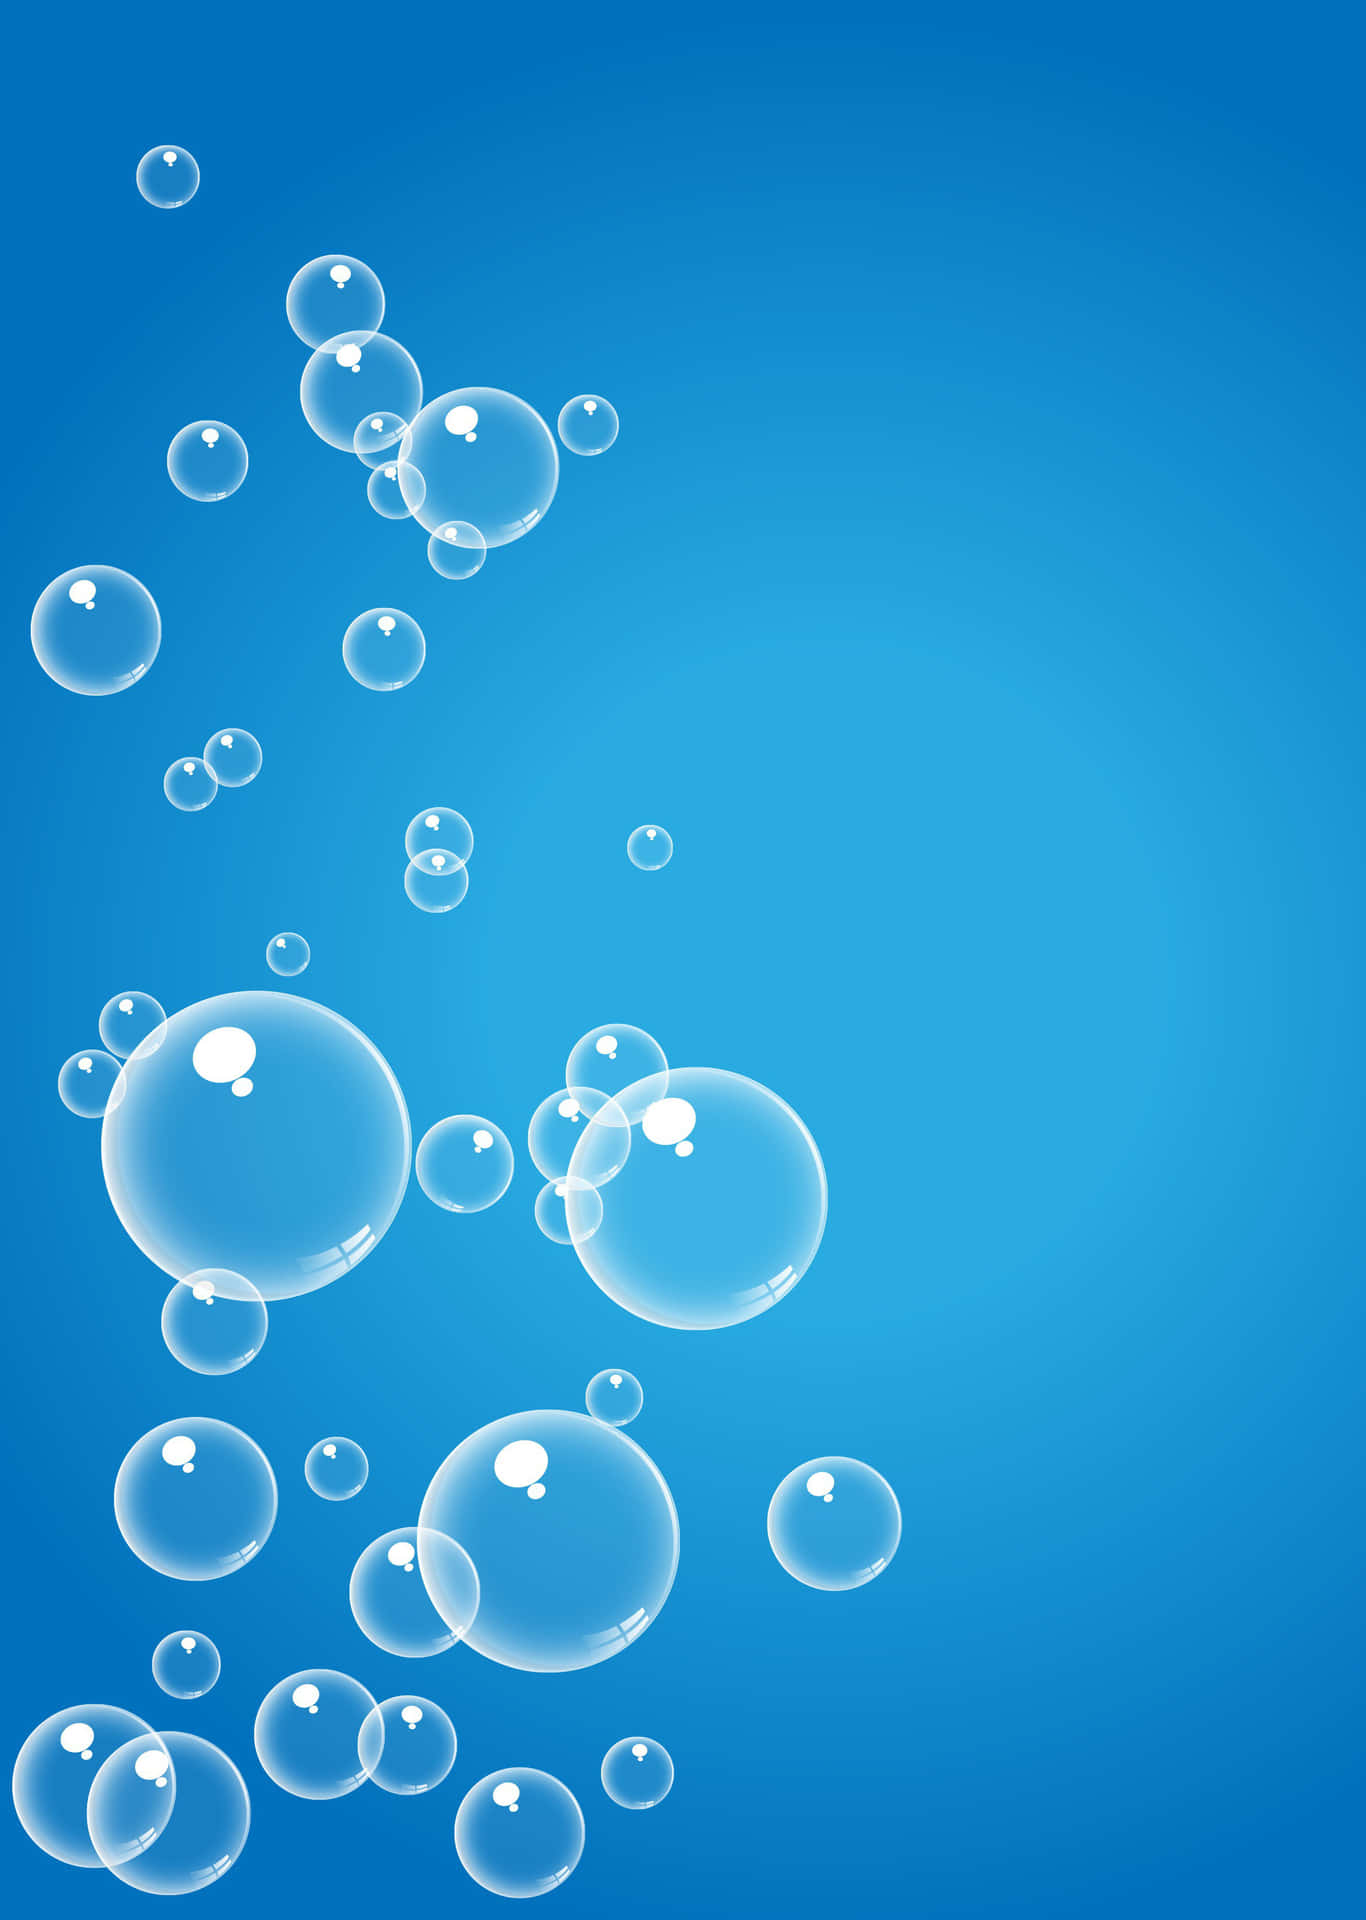 Tag et billede af blå bobler i hjemmeskærmbaggrunden.